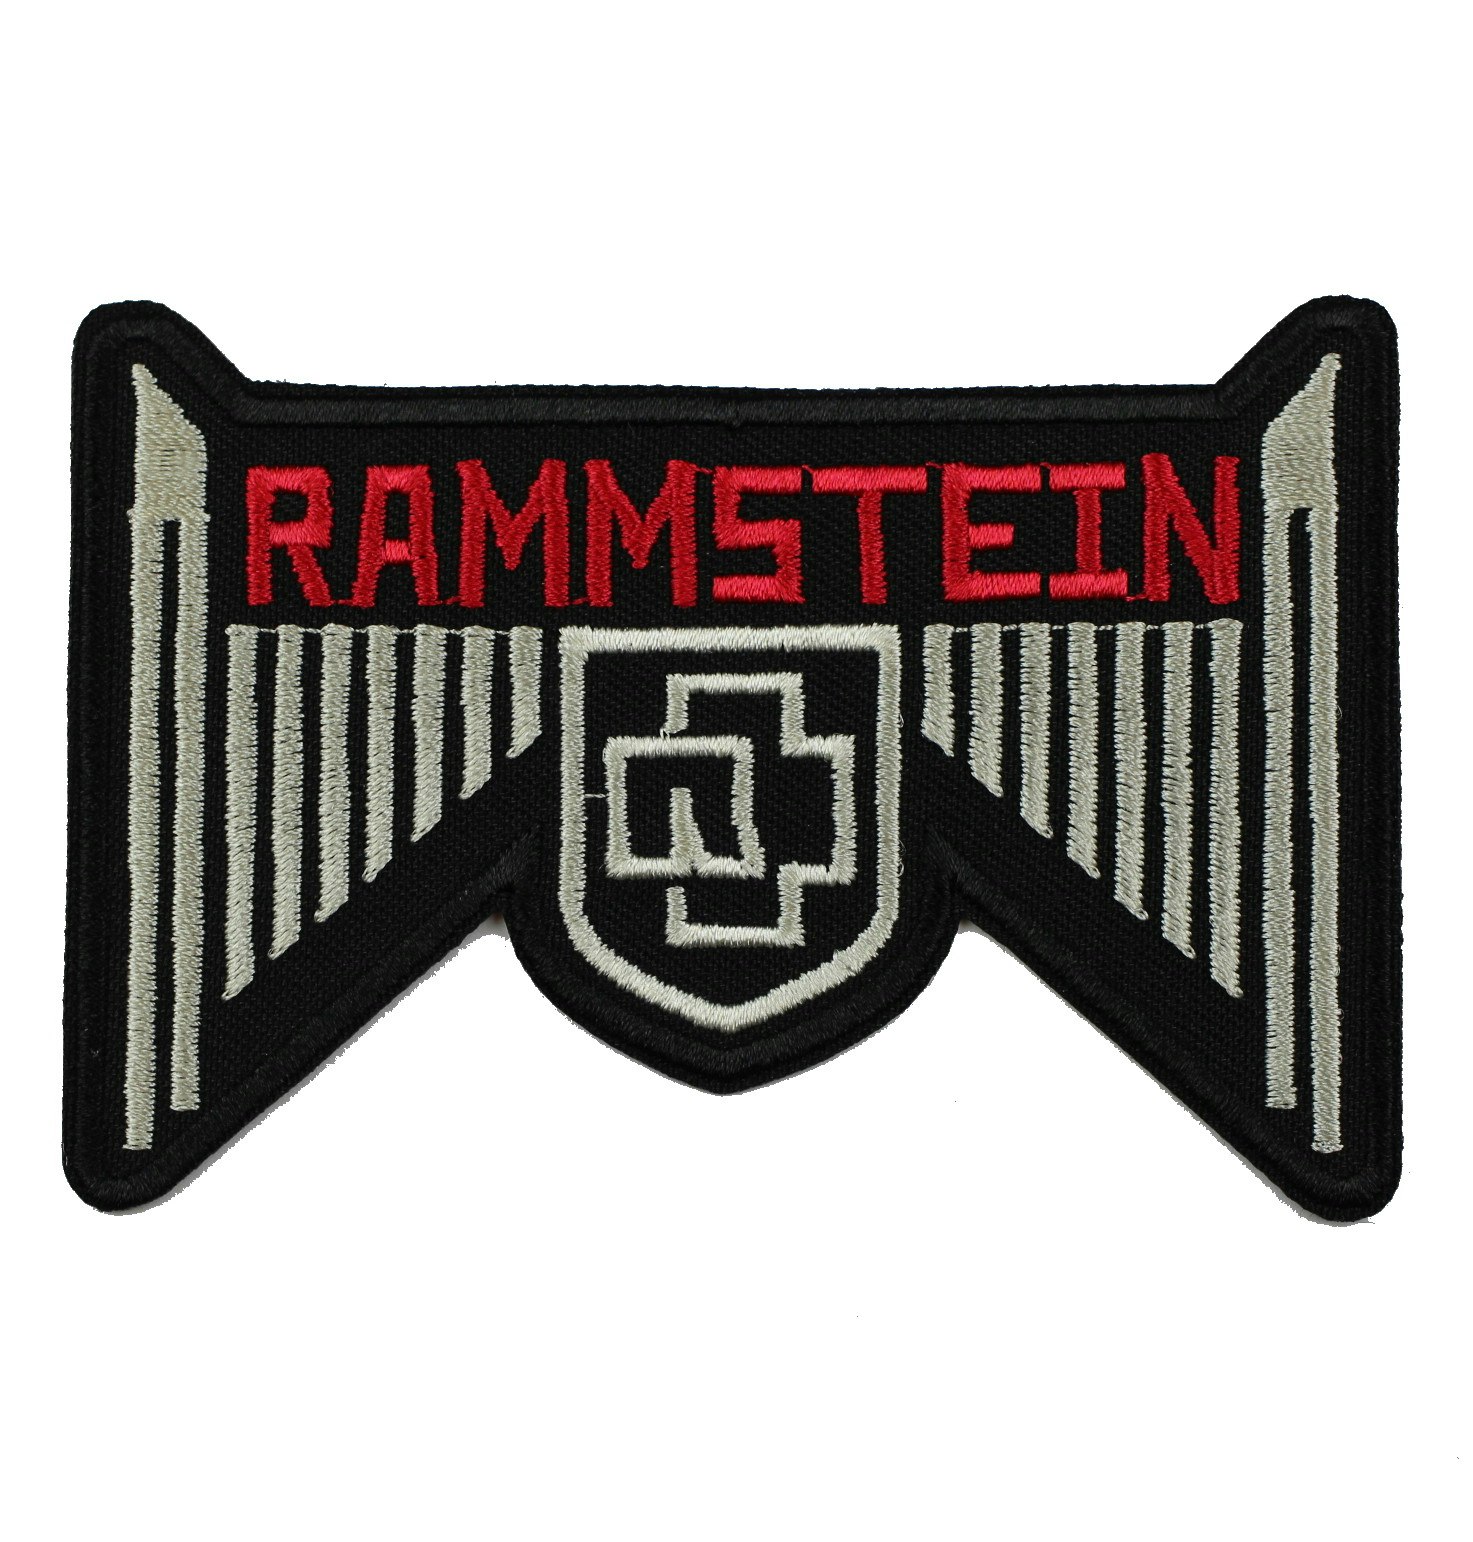 Rammstein wings logo patch